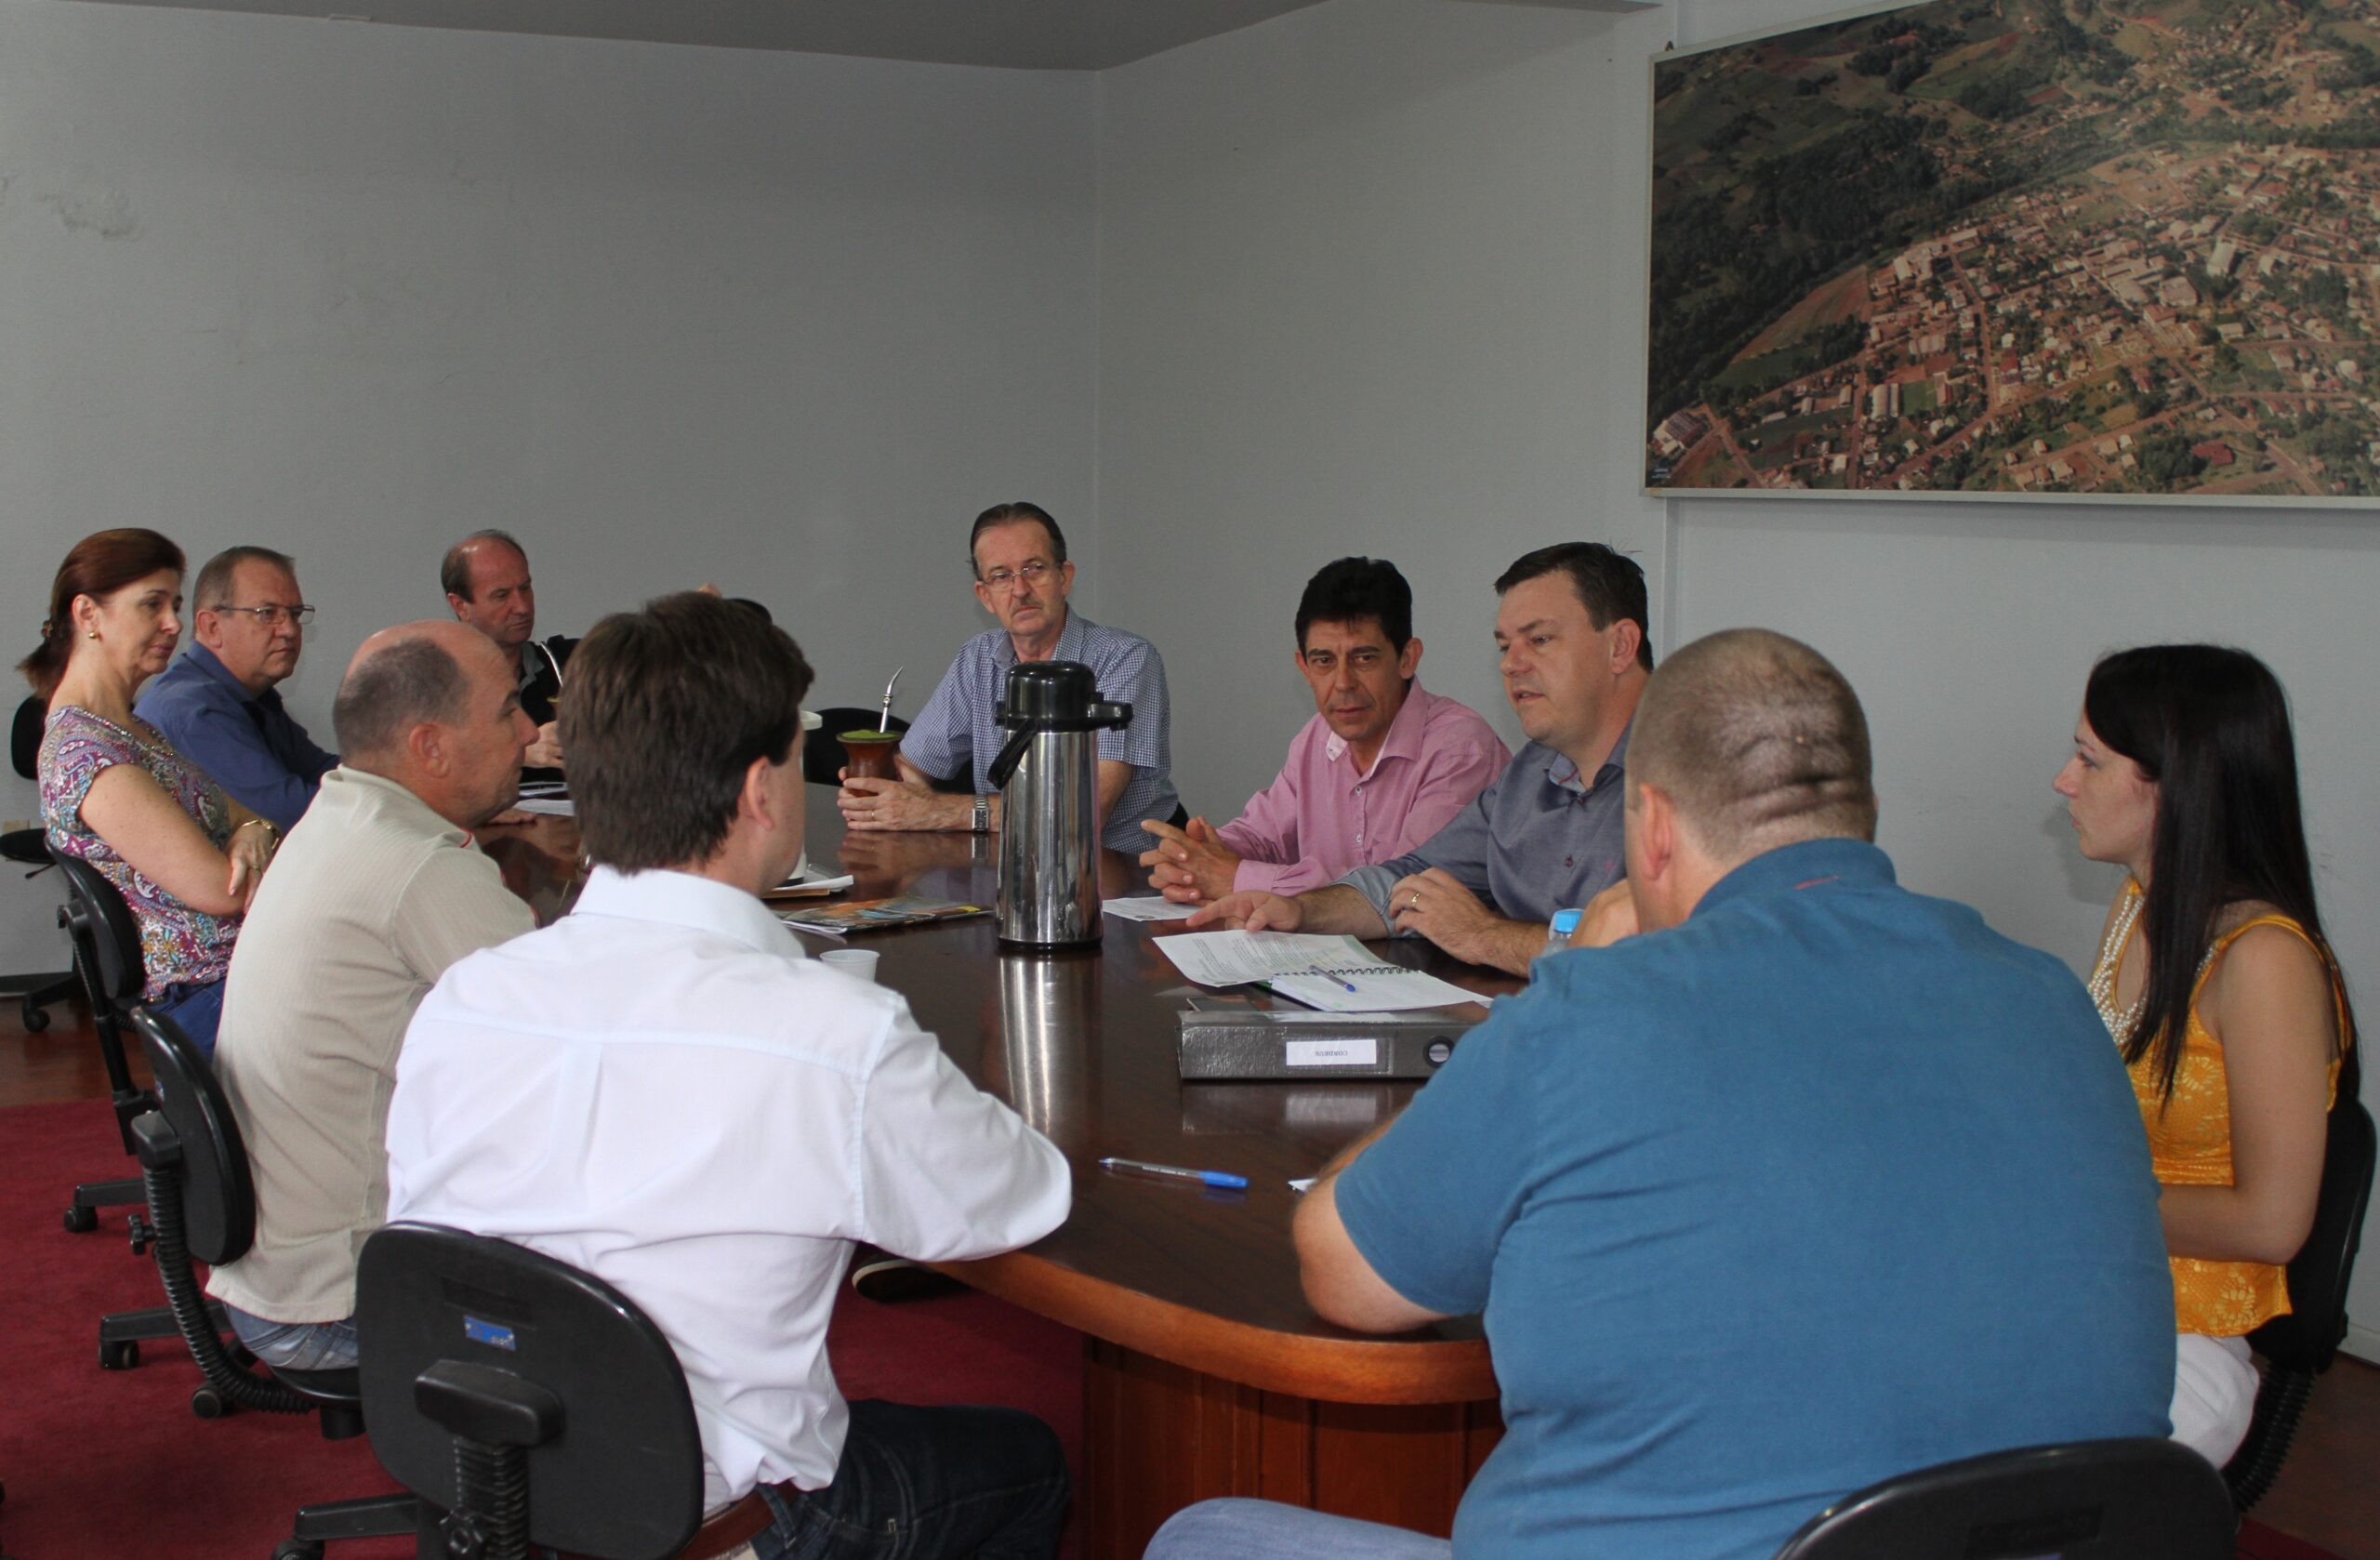 Condeus esteve reunido para pautar ações de recuperação do município durante os próximos meses